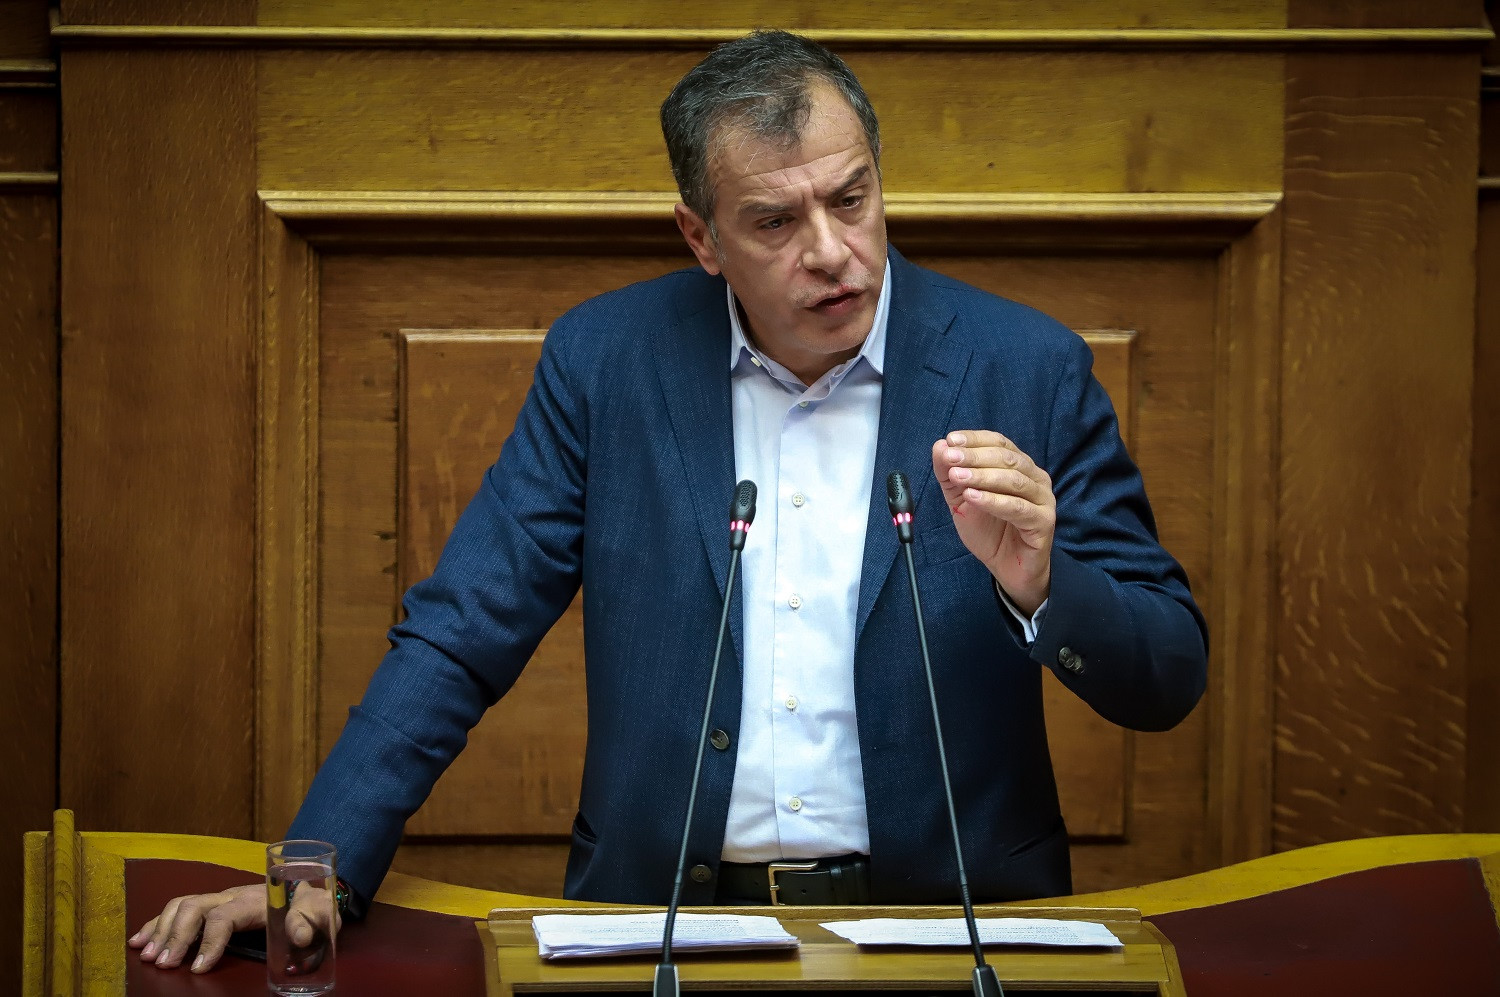 Θεοδωράκης: Η ρητορική βίας δεν μπορεί να είναι η γλώσσα της σύγχρονης πολιτικής